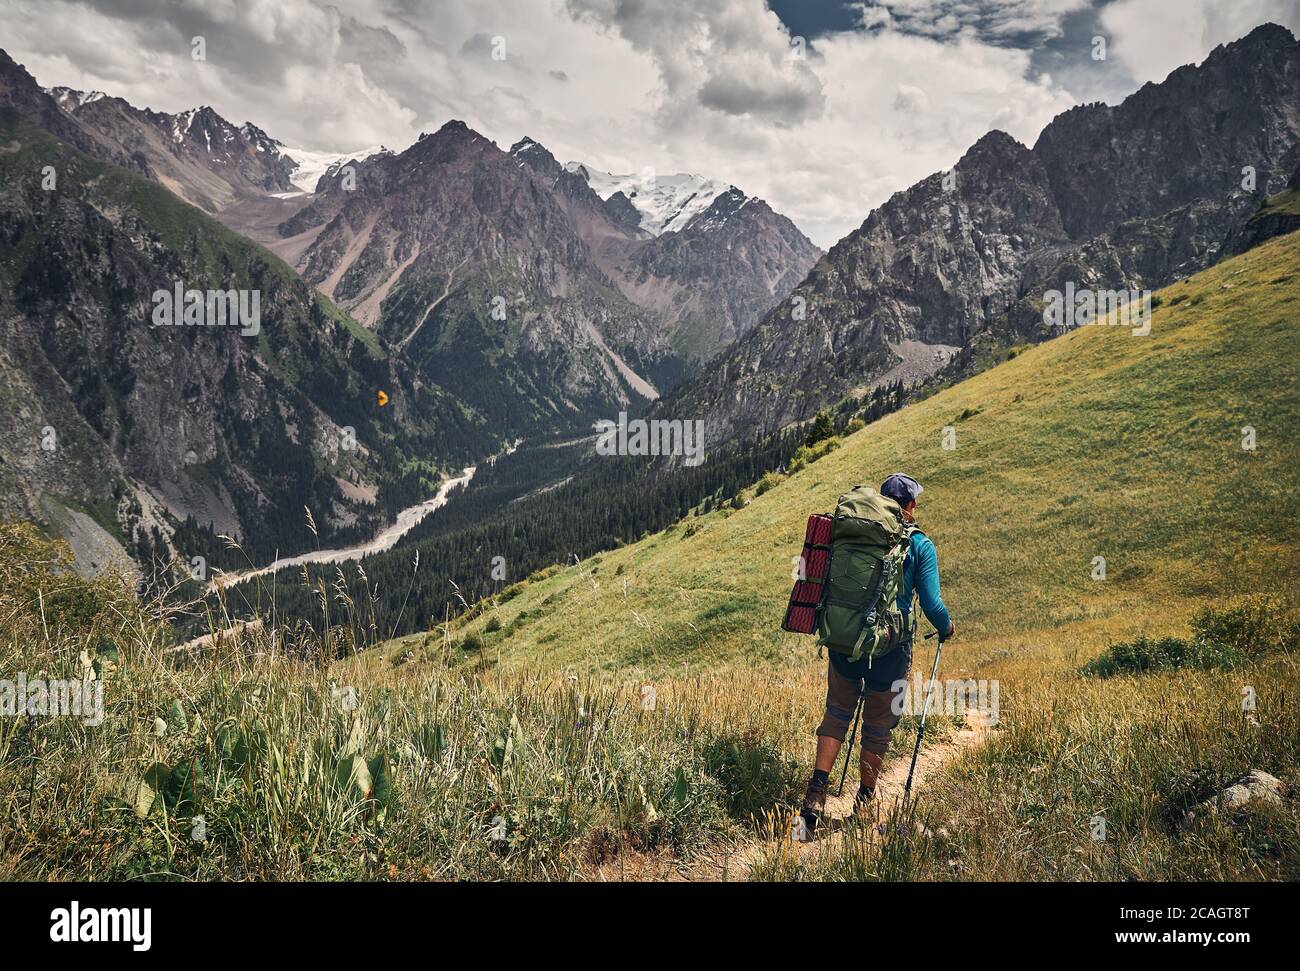 Homme touristique avec grand sac à dos est de marcher dans la vallée de montagne verte avec des sommets enneigés et ciel nuageux fond Banque D'Images